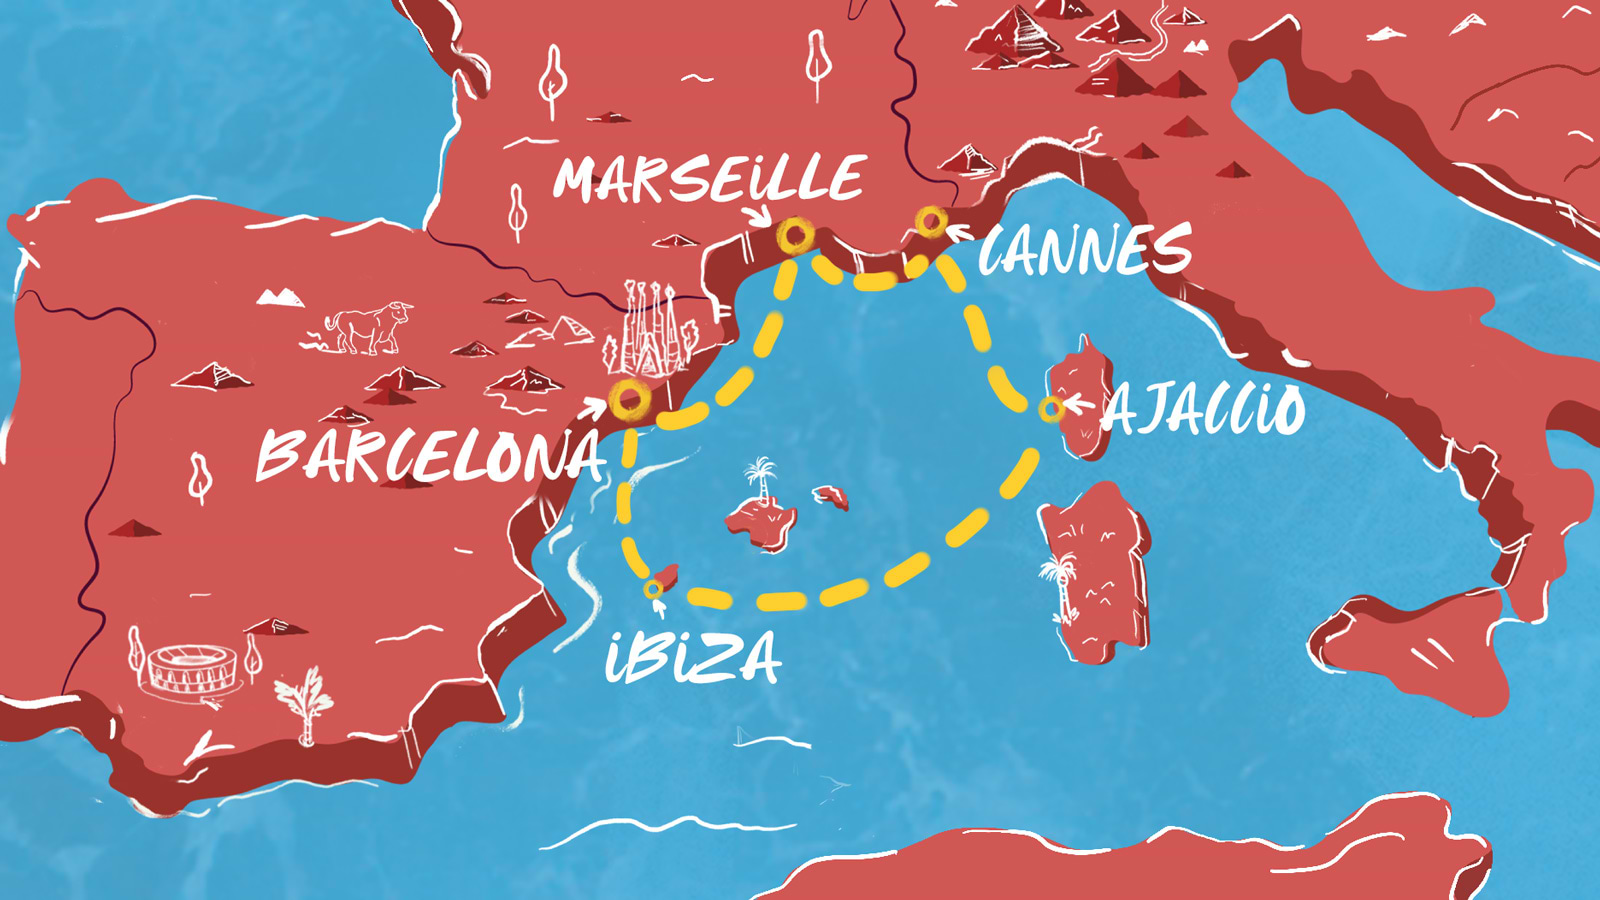 Ibiza Virgins' Guide: When to go to Ibiza